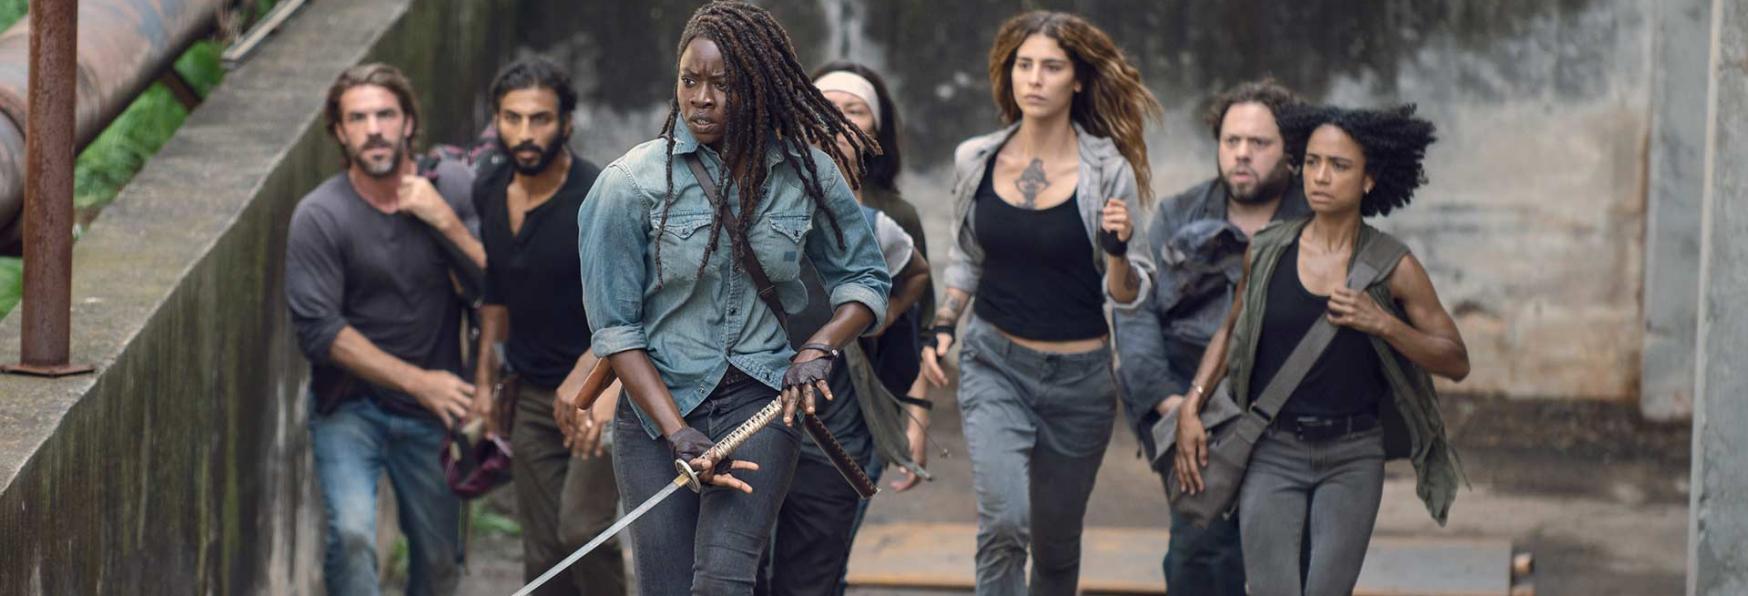 The Walking Dead 10: Diverged è l’Episodio Peggio Recensito di tutta la Serie TV